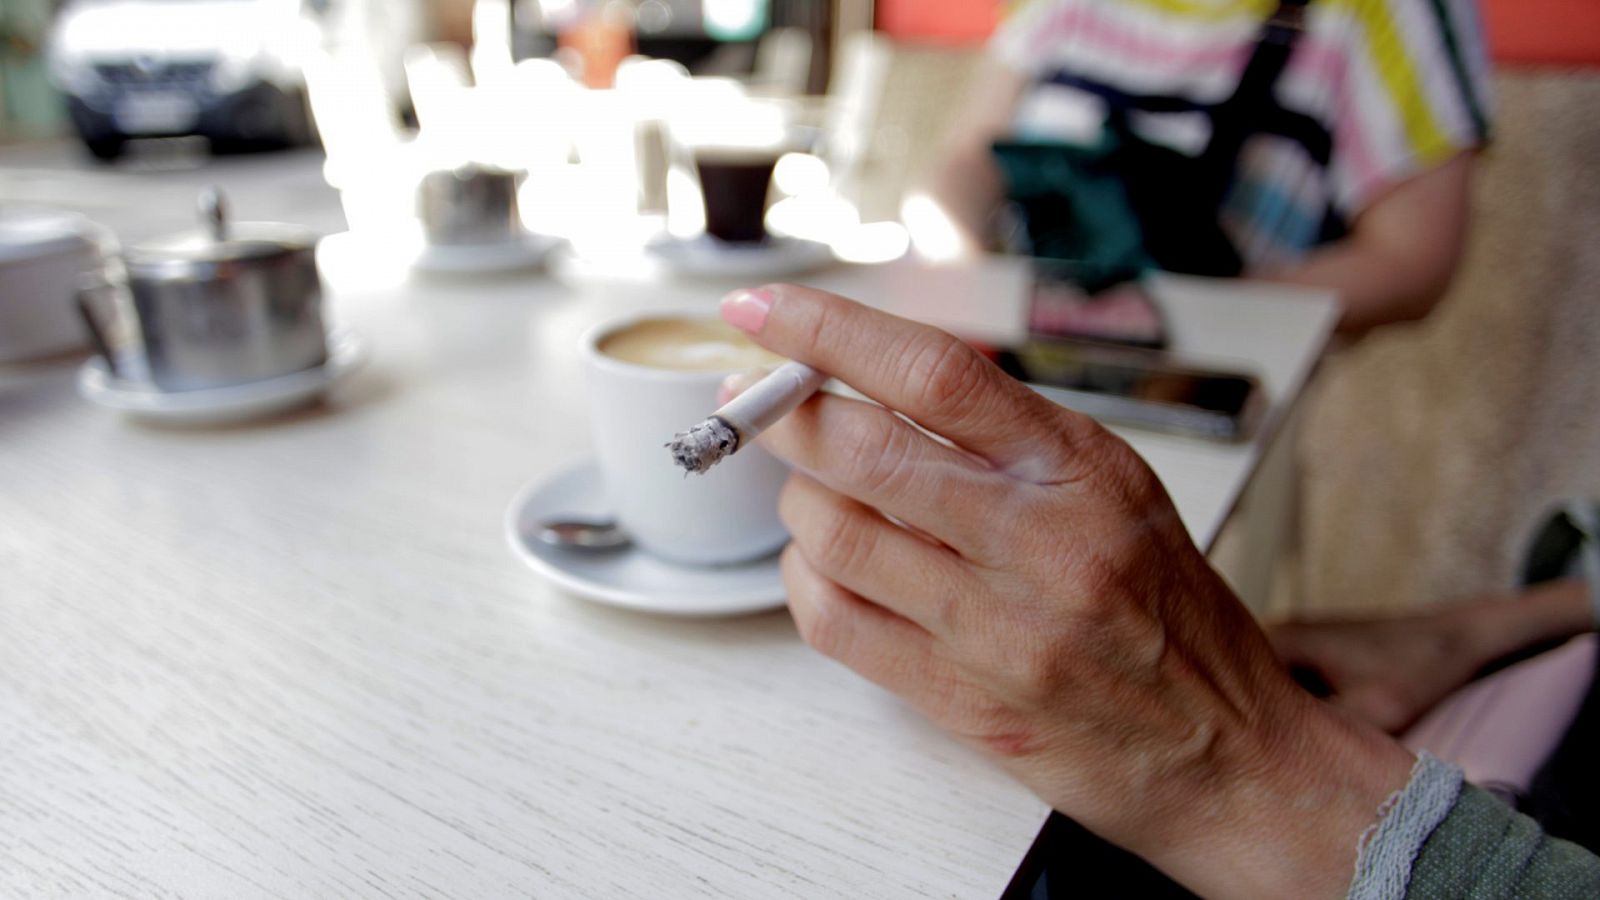 La mano d euna mujer sujeta un cigarro mientras se apoya en la mesa de una terraza de un bar. De fondo se ve diuminado un café